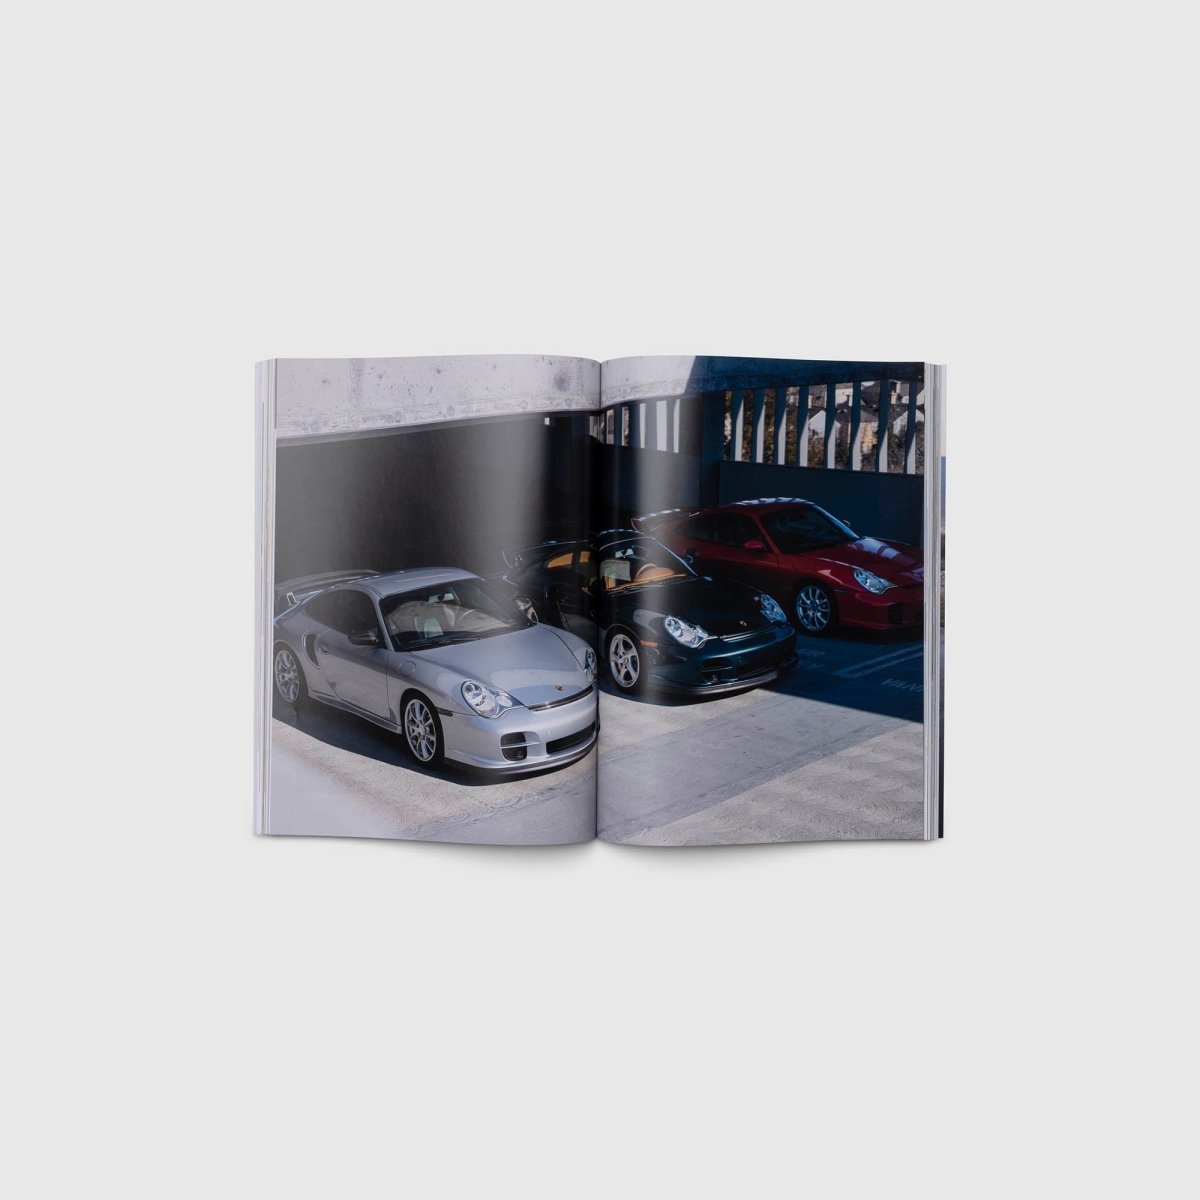 000 Magazine - Issue 021 - Autotype